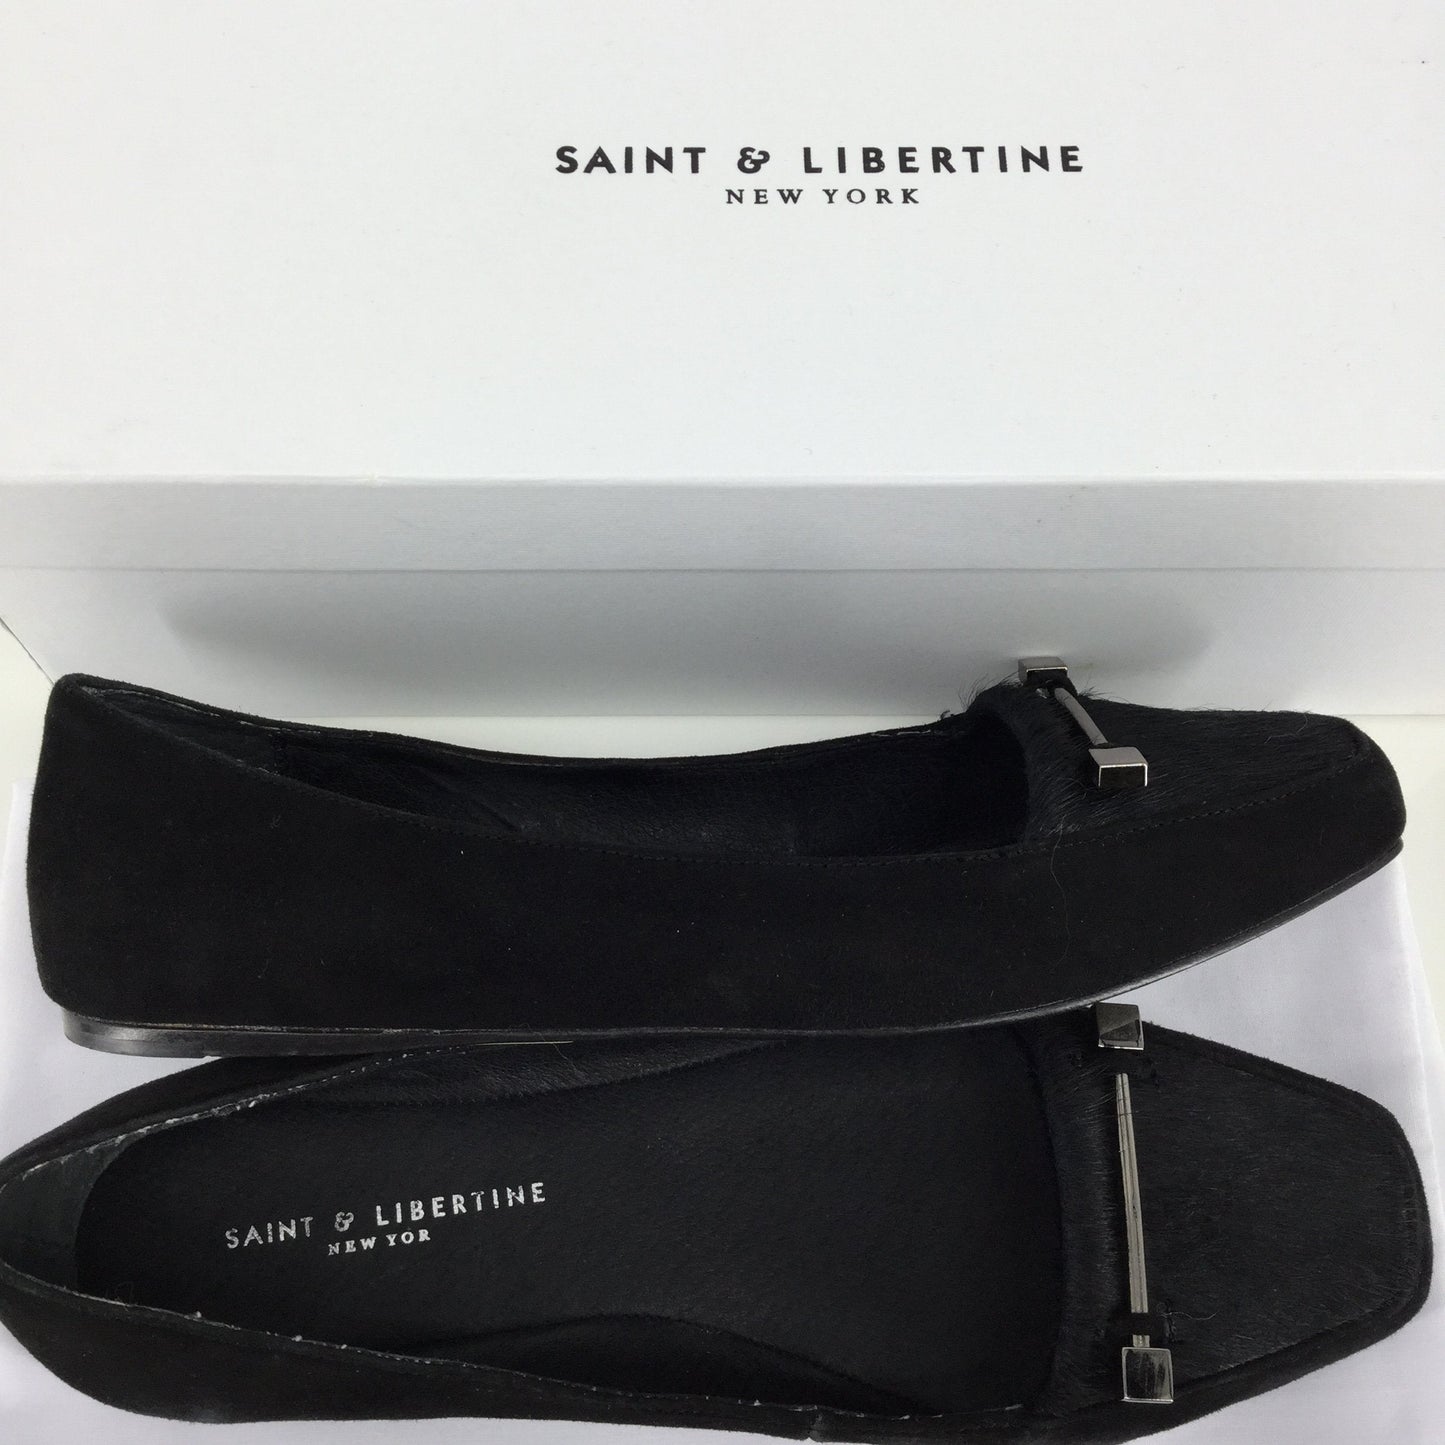 Saint & Libertine shoes size:6.5